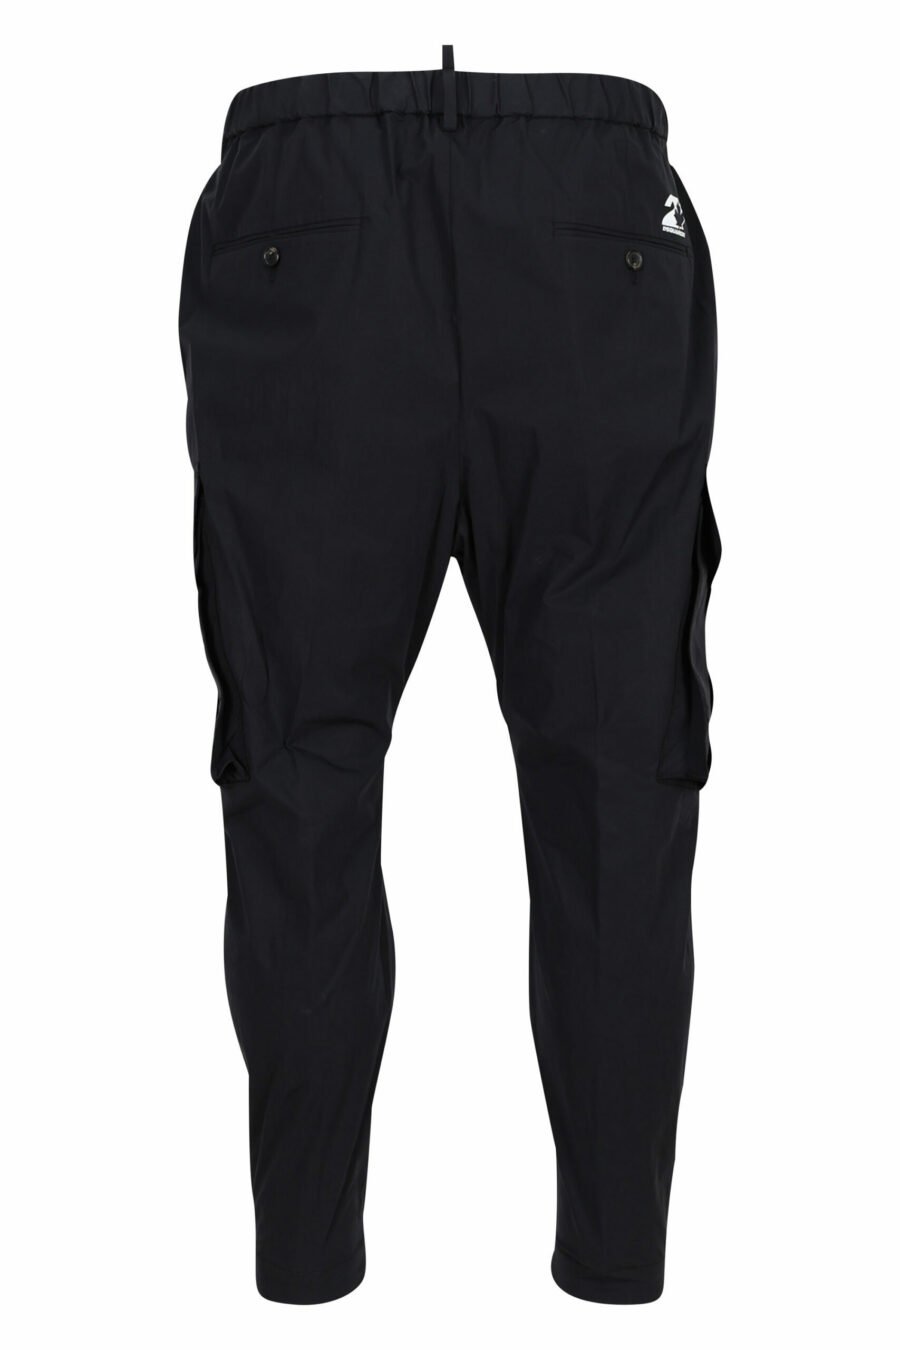 Pantalon noir de pullover - 8054148060992 2 échelles